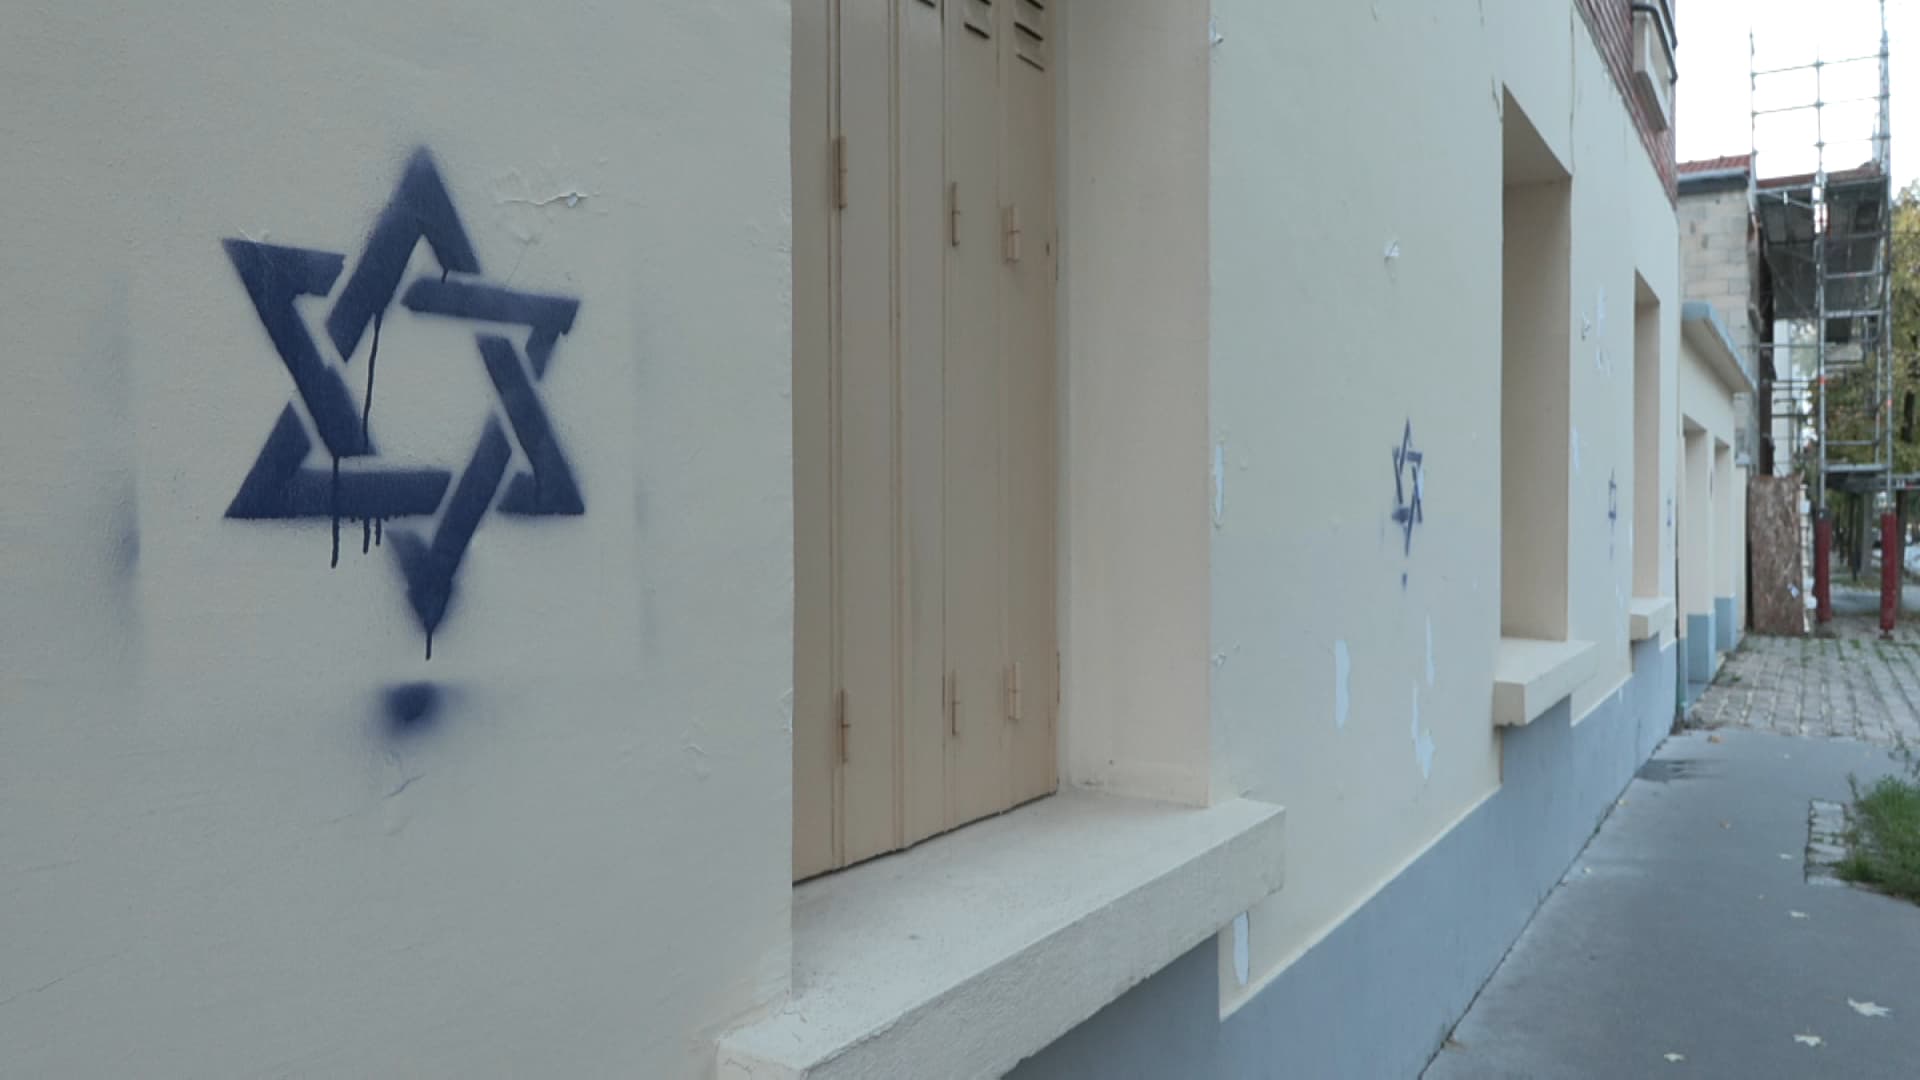 Le carrelage mural adhésif pour un relooking rapide  Alliance le premier  magazine de la communauté juive, actualité juive, israel, antisémitisme info